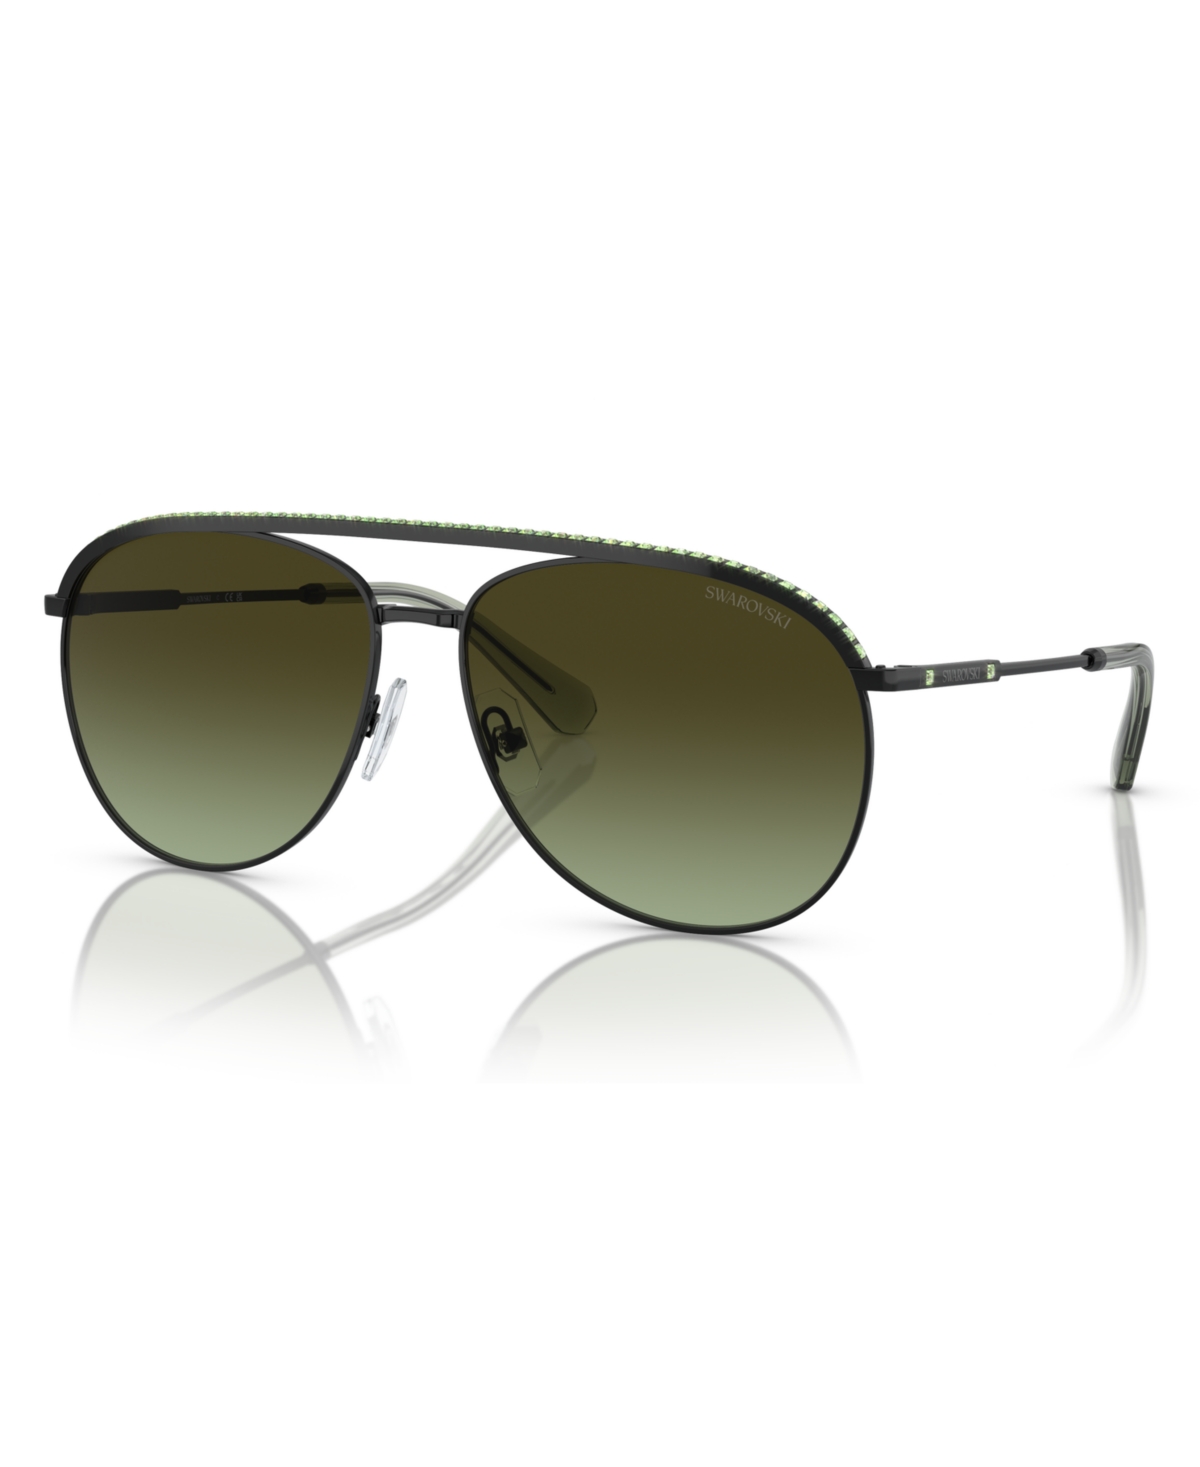 Swarovski Women's Sunglasses, Gradient Sk7005 In Black